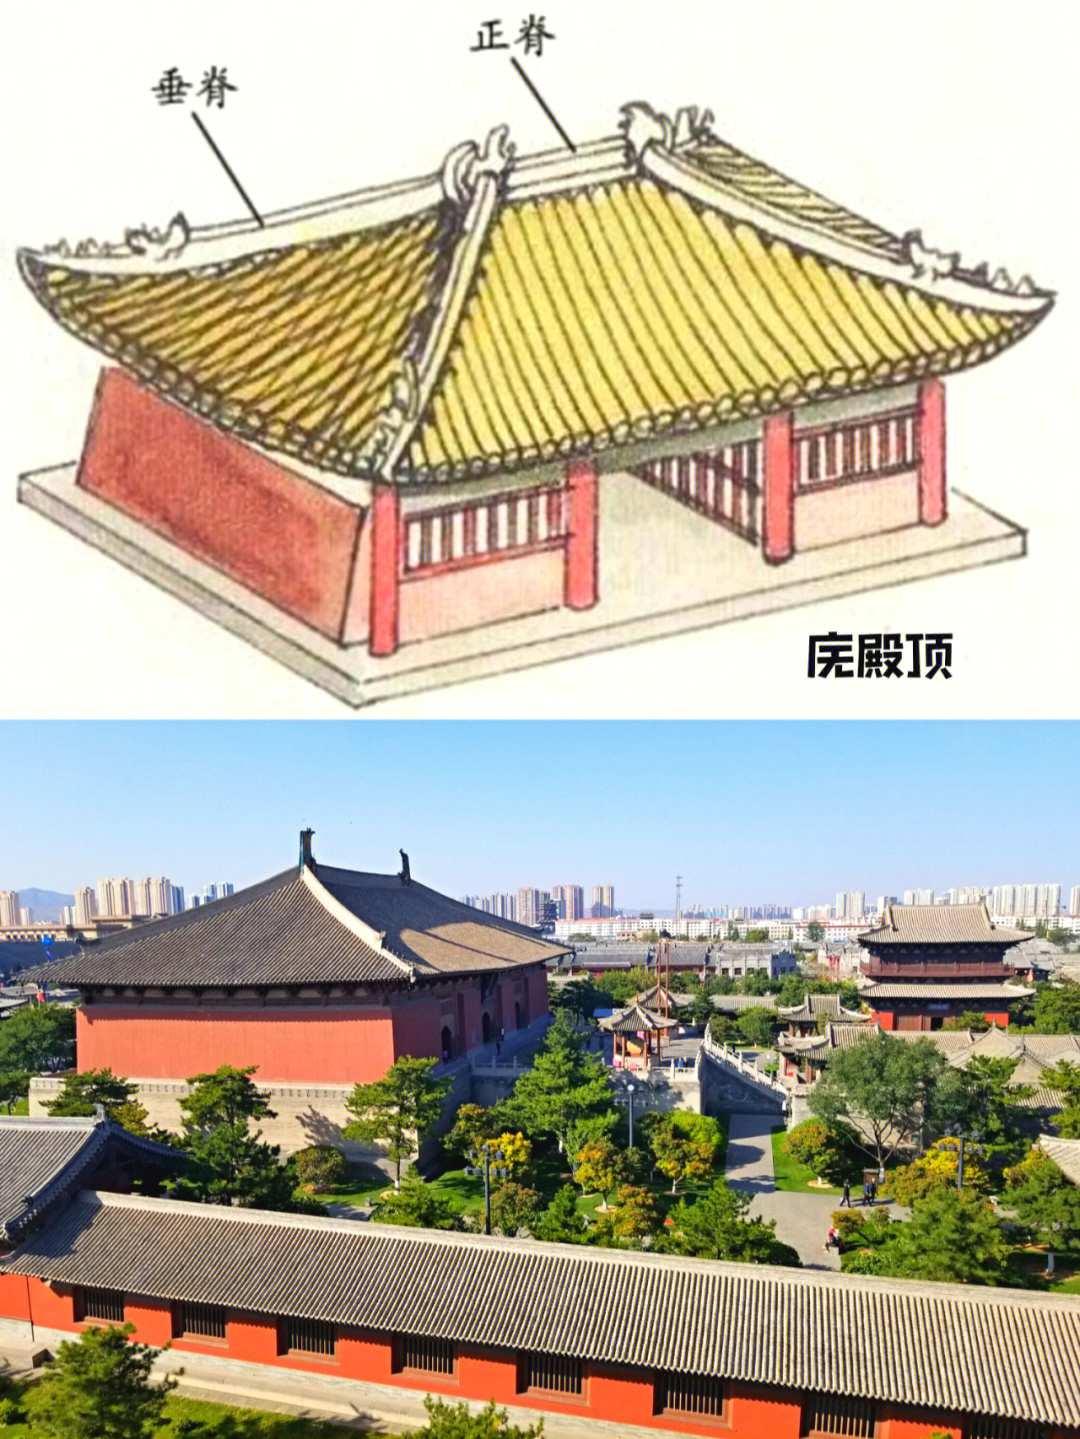 中国古代建筑屋顶样式多,这里就介绍几个最常见的屋顶样式,那些比较